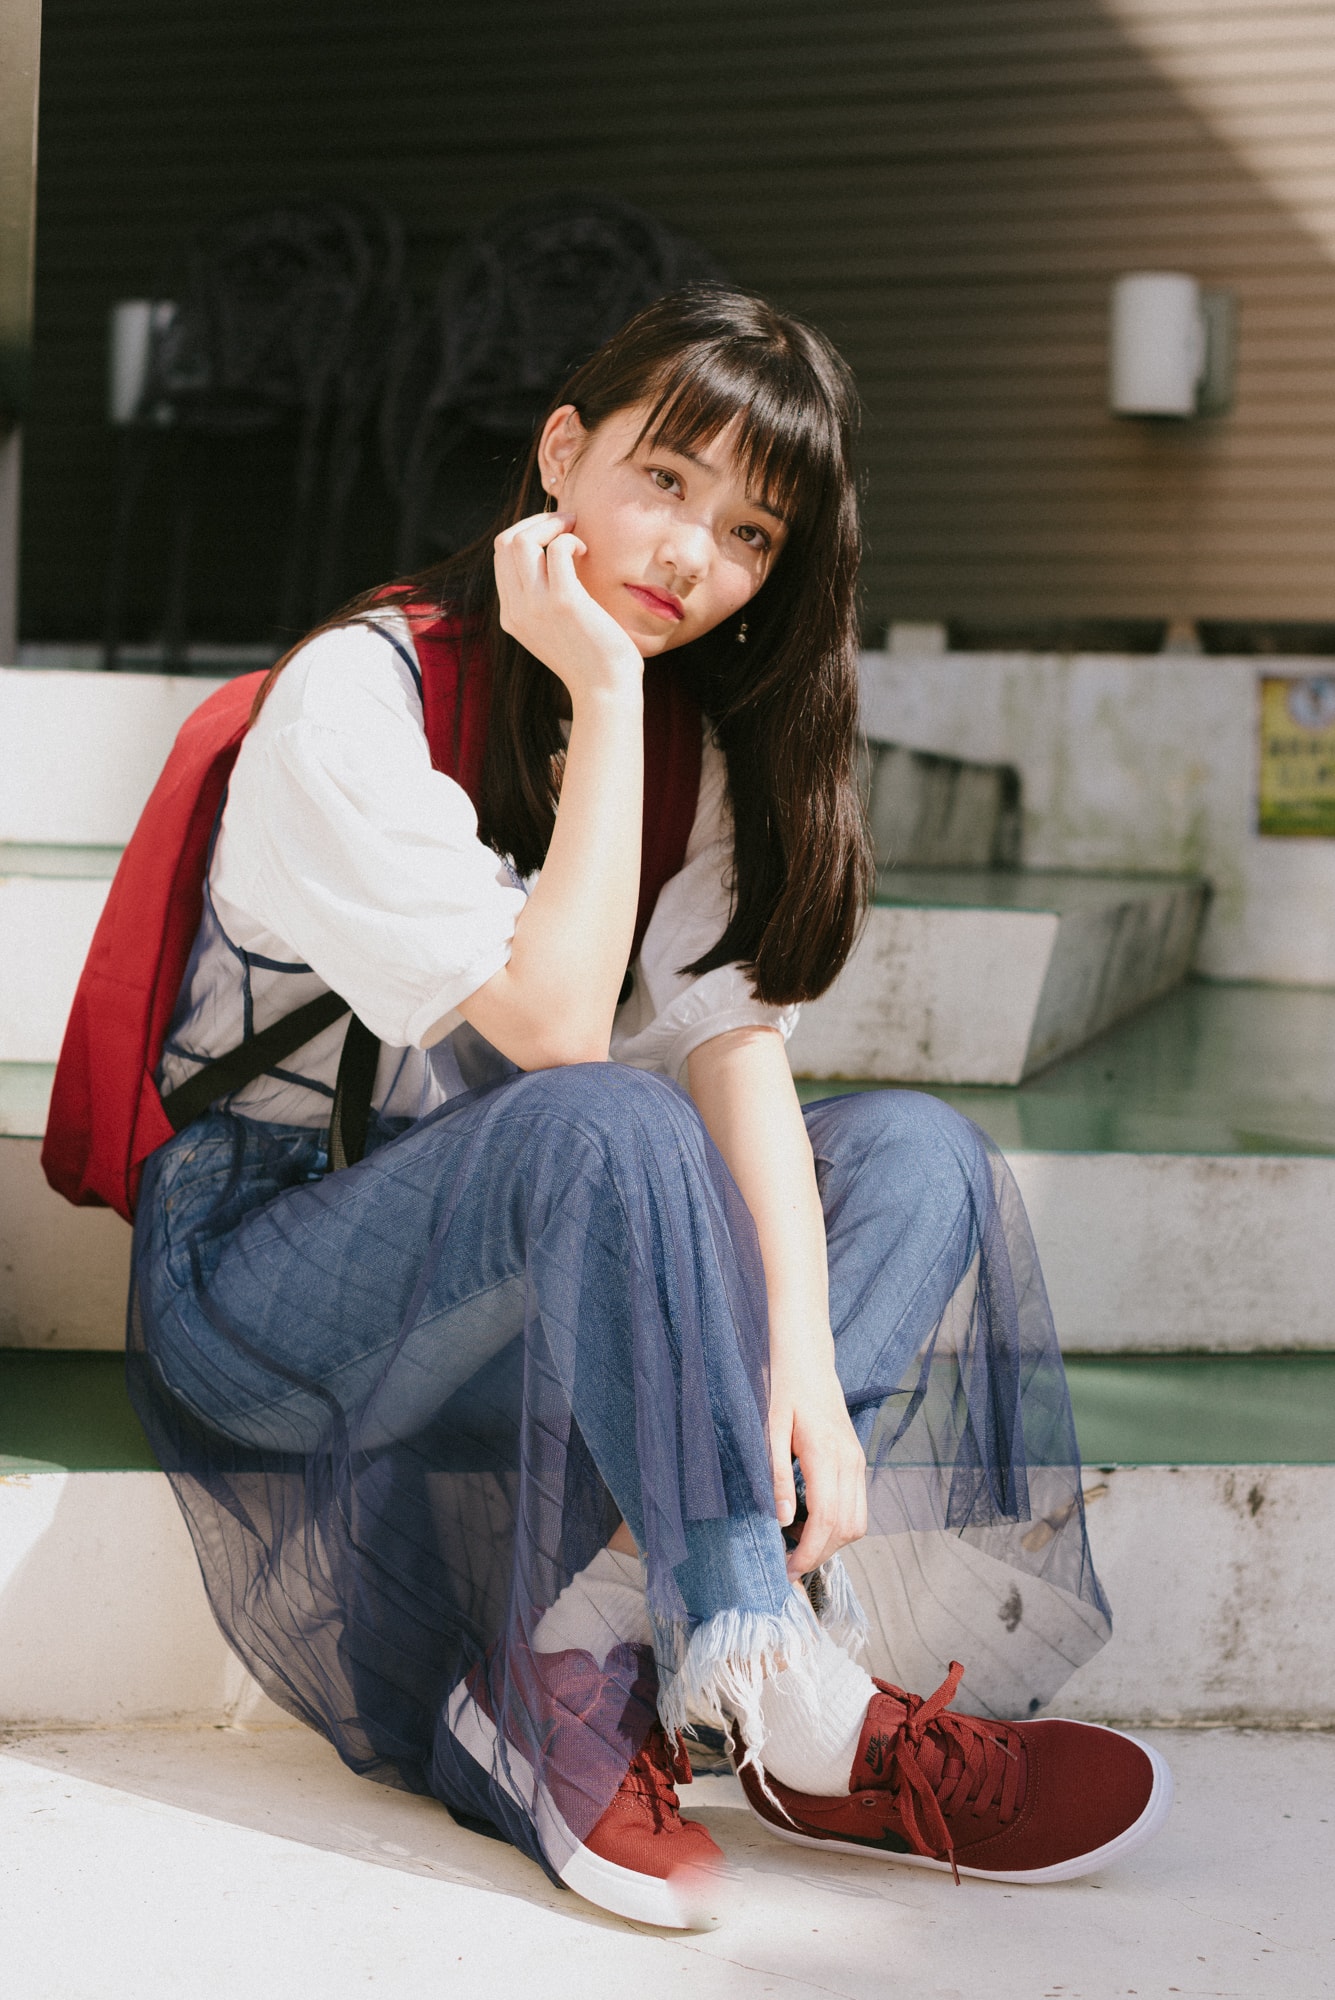 女子高生の流行りのファッショントレンドをチェック モデル 佐久間乃愛ちゃんによる街頭インタビューレポート